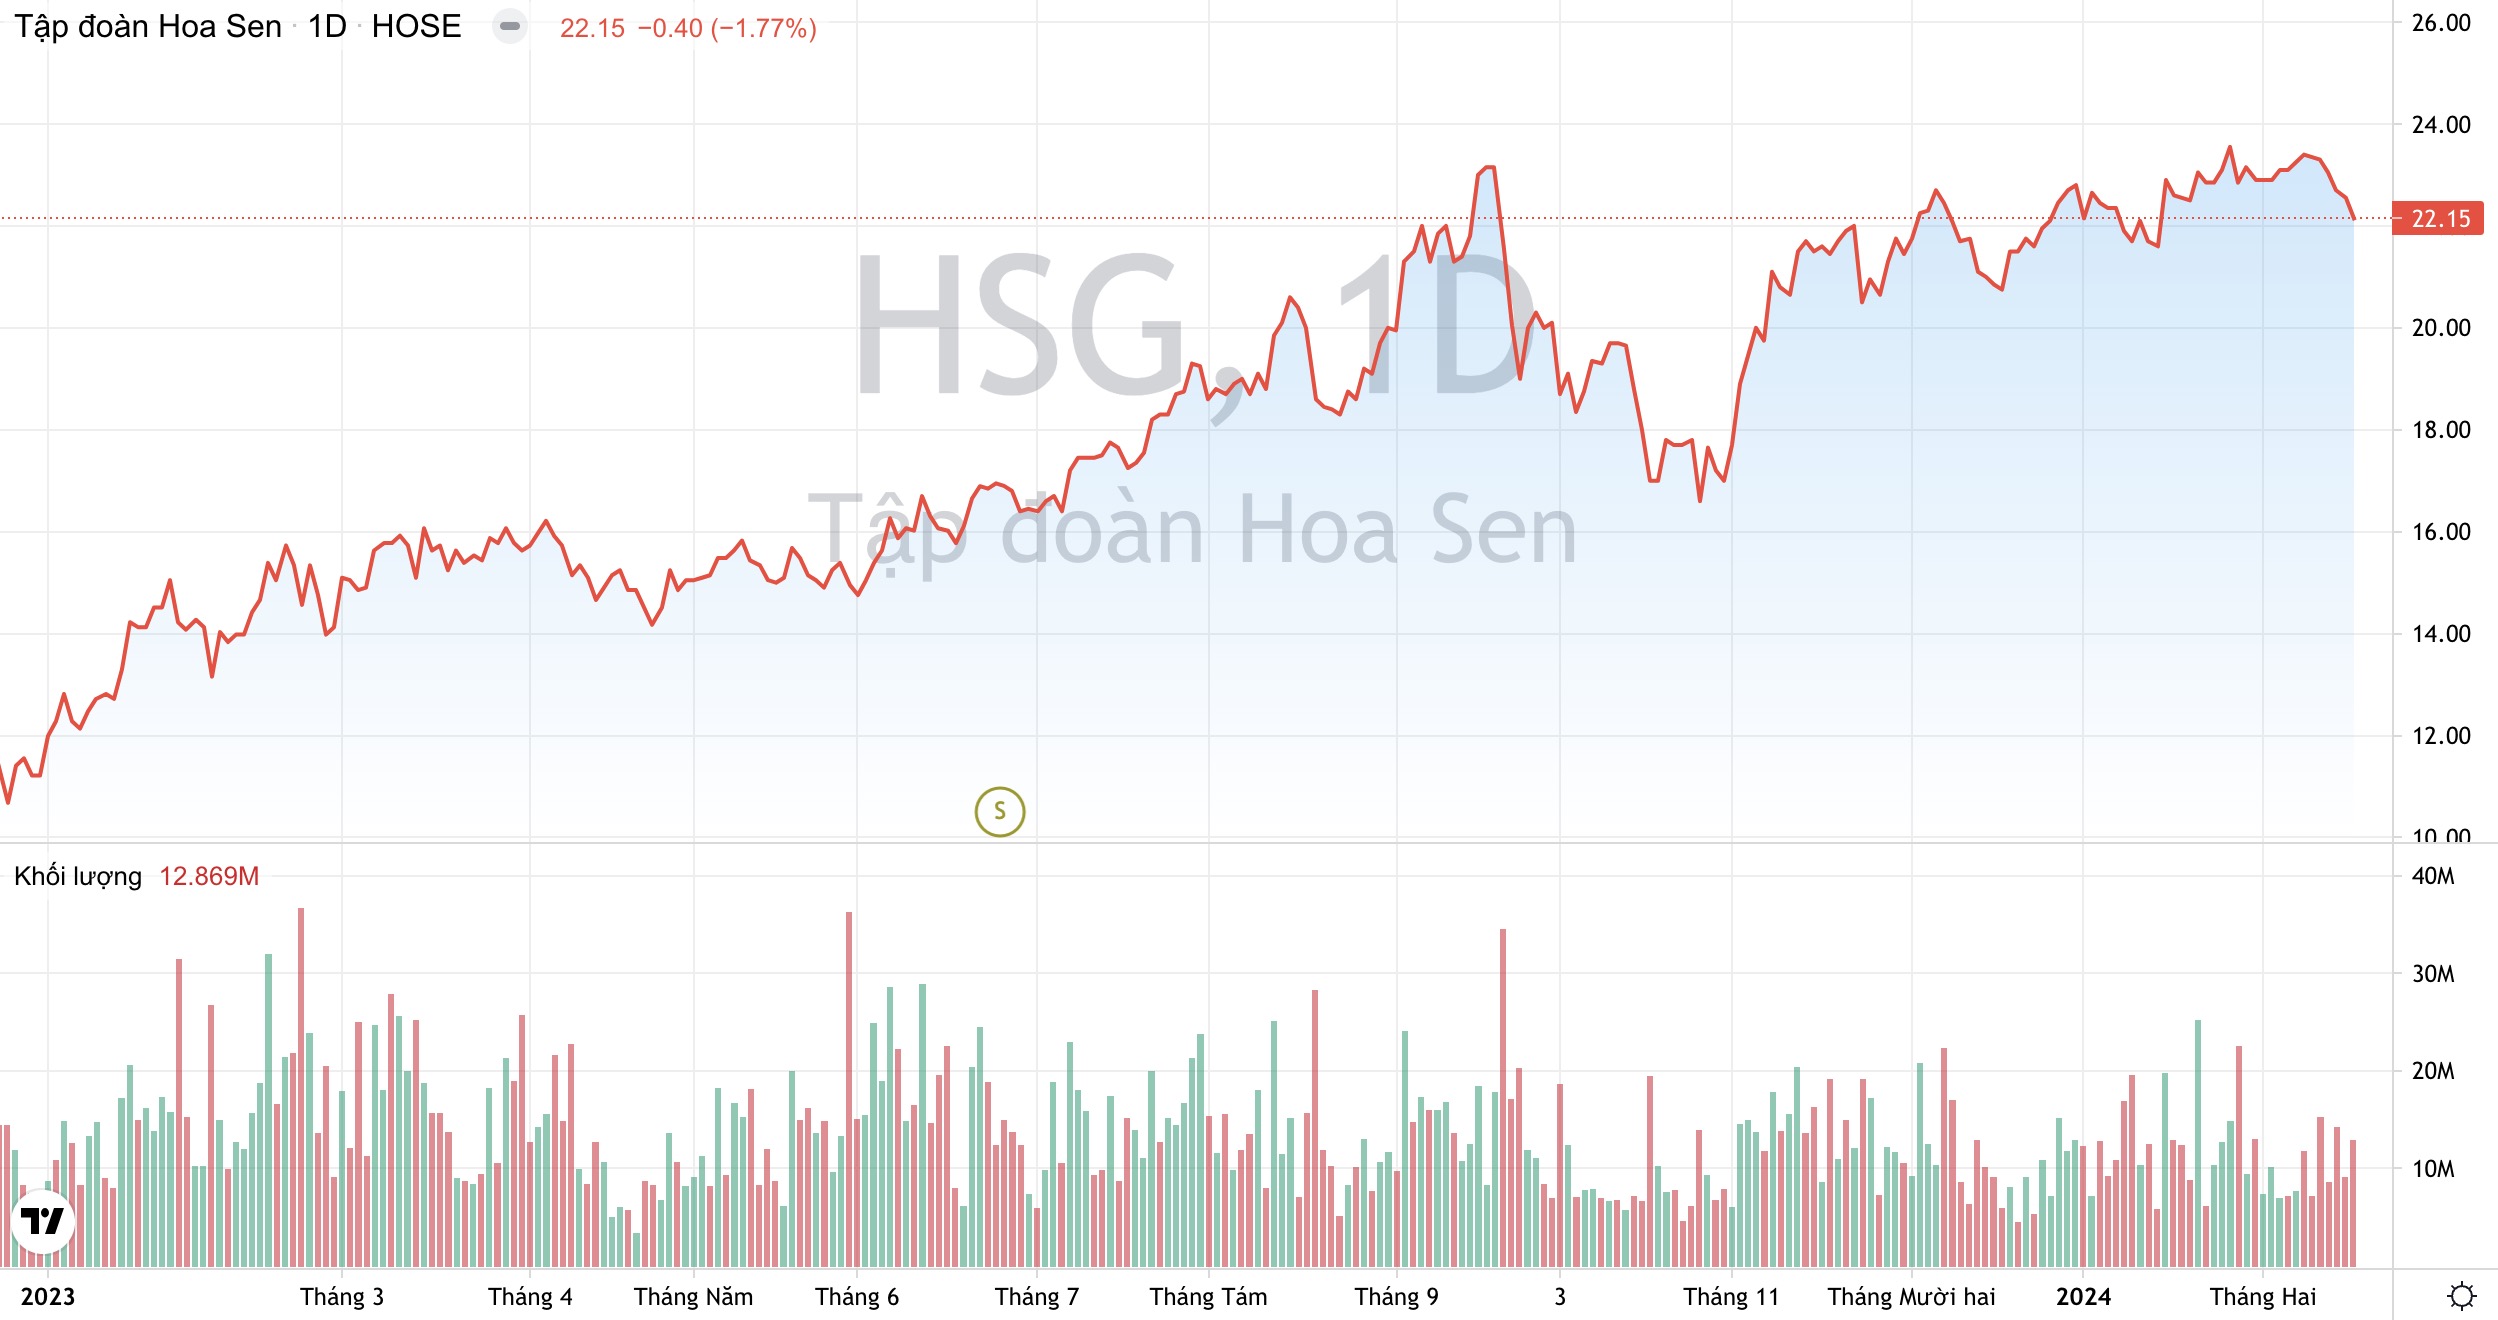 Tập đoàn Hoa Sen HSG : Ngưng mở rộng chuỗi Hoa Sen Home, mảng bất động sản chưa có kế hoạch 4